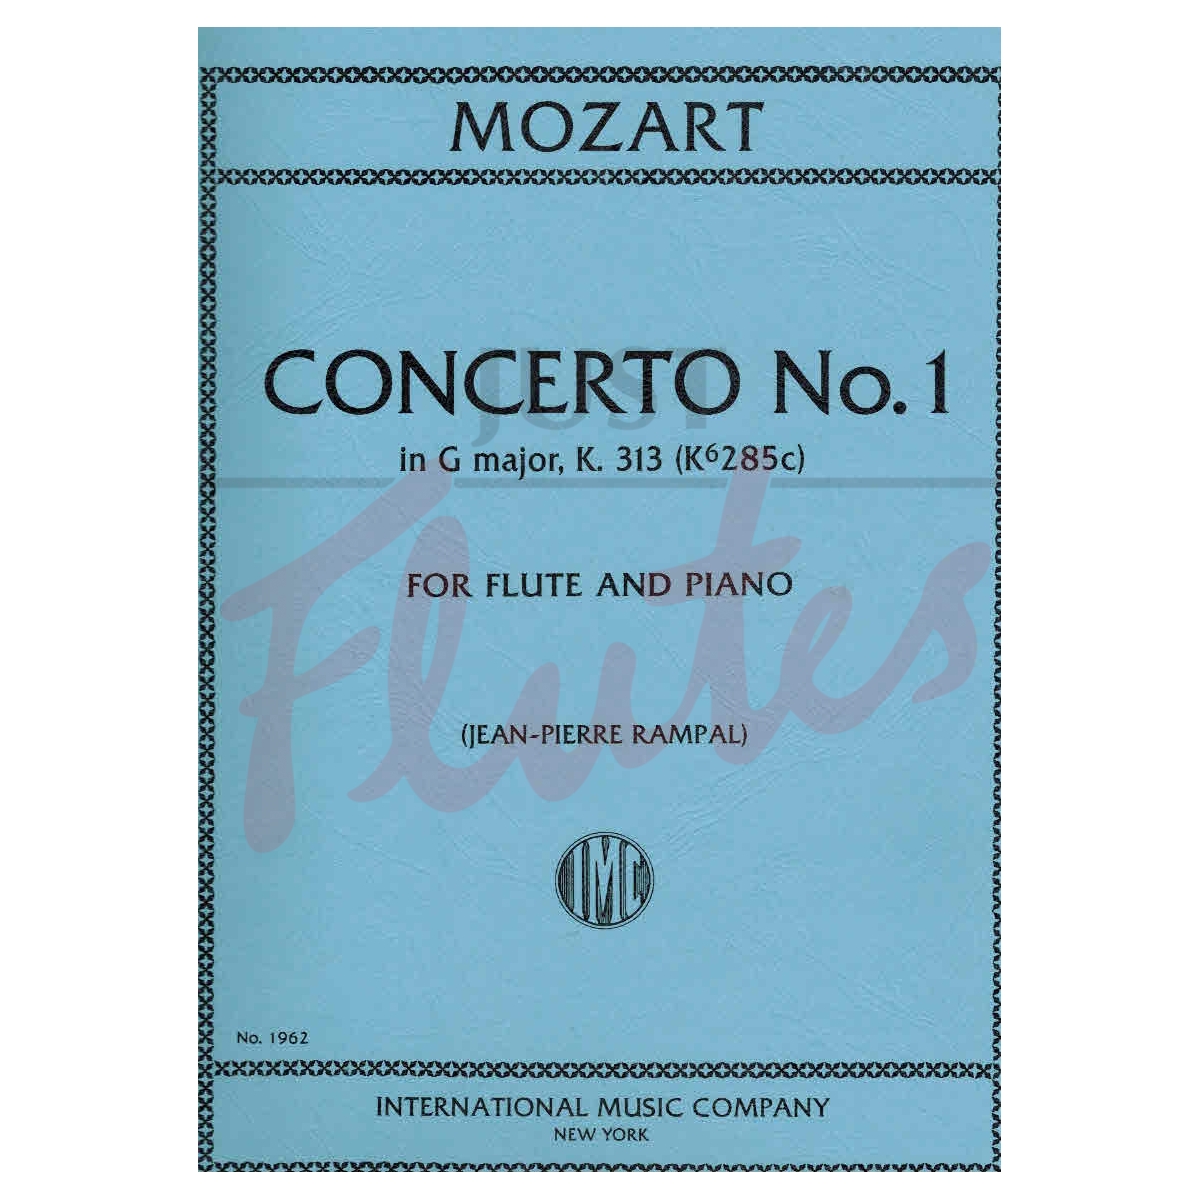 Flute Concerto No 1 in G major